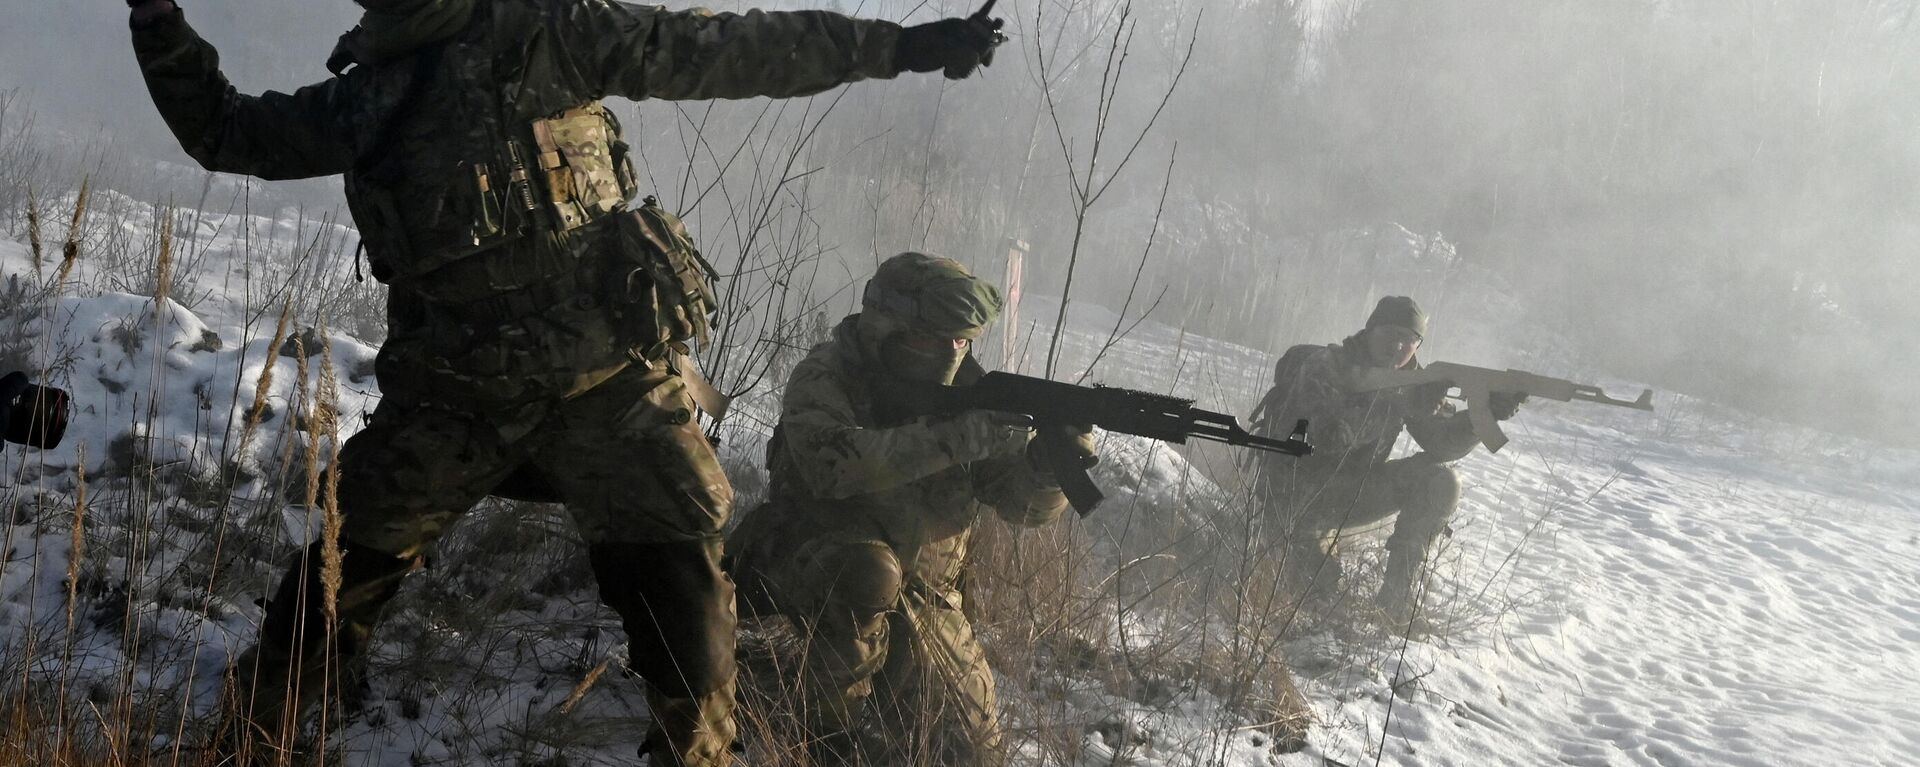 Militares das Forças Armadas da Ucrânia participam de um exercício perto de Kiev em 25 de dezembro de 2021 - Sputnik Brasil, 1920, 25.02.2022